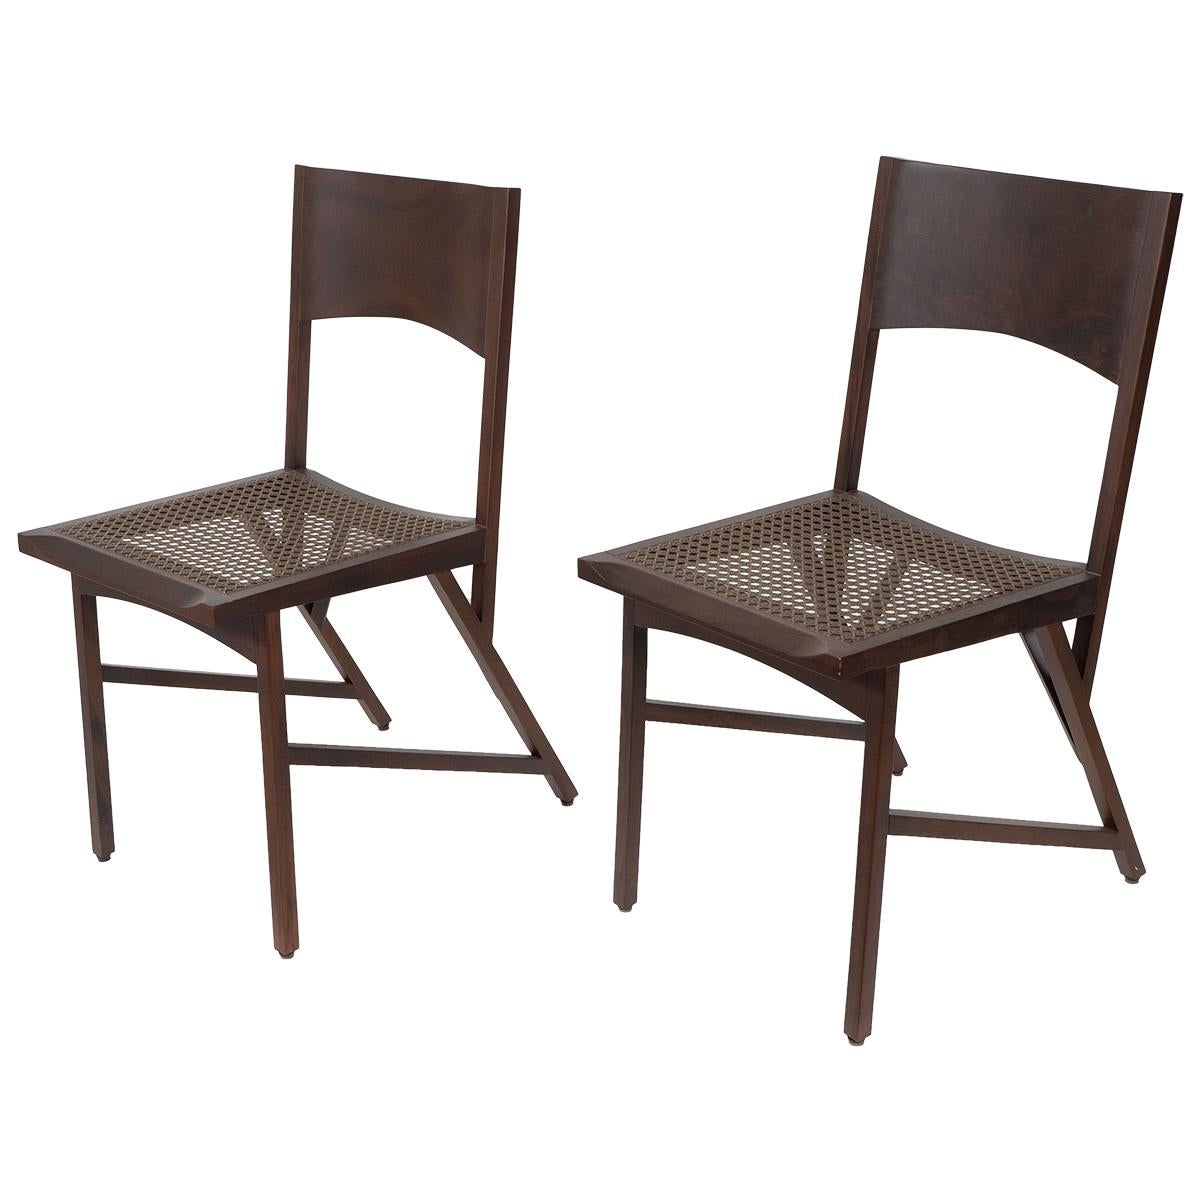 Ein Paar Stühle aus Korbgeflecht und seltenem brasilianischem Holz von Paolo Alves in limitierter Auflage